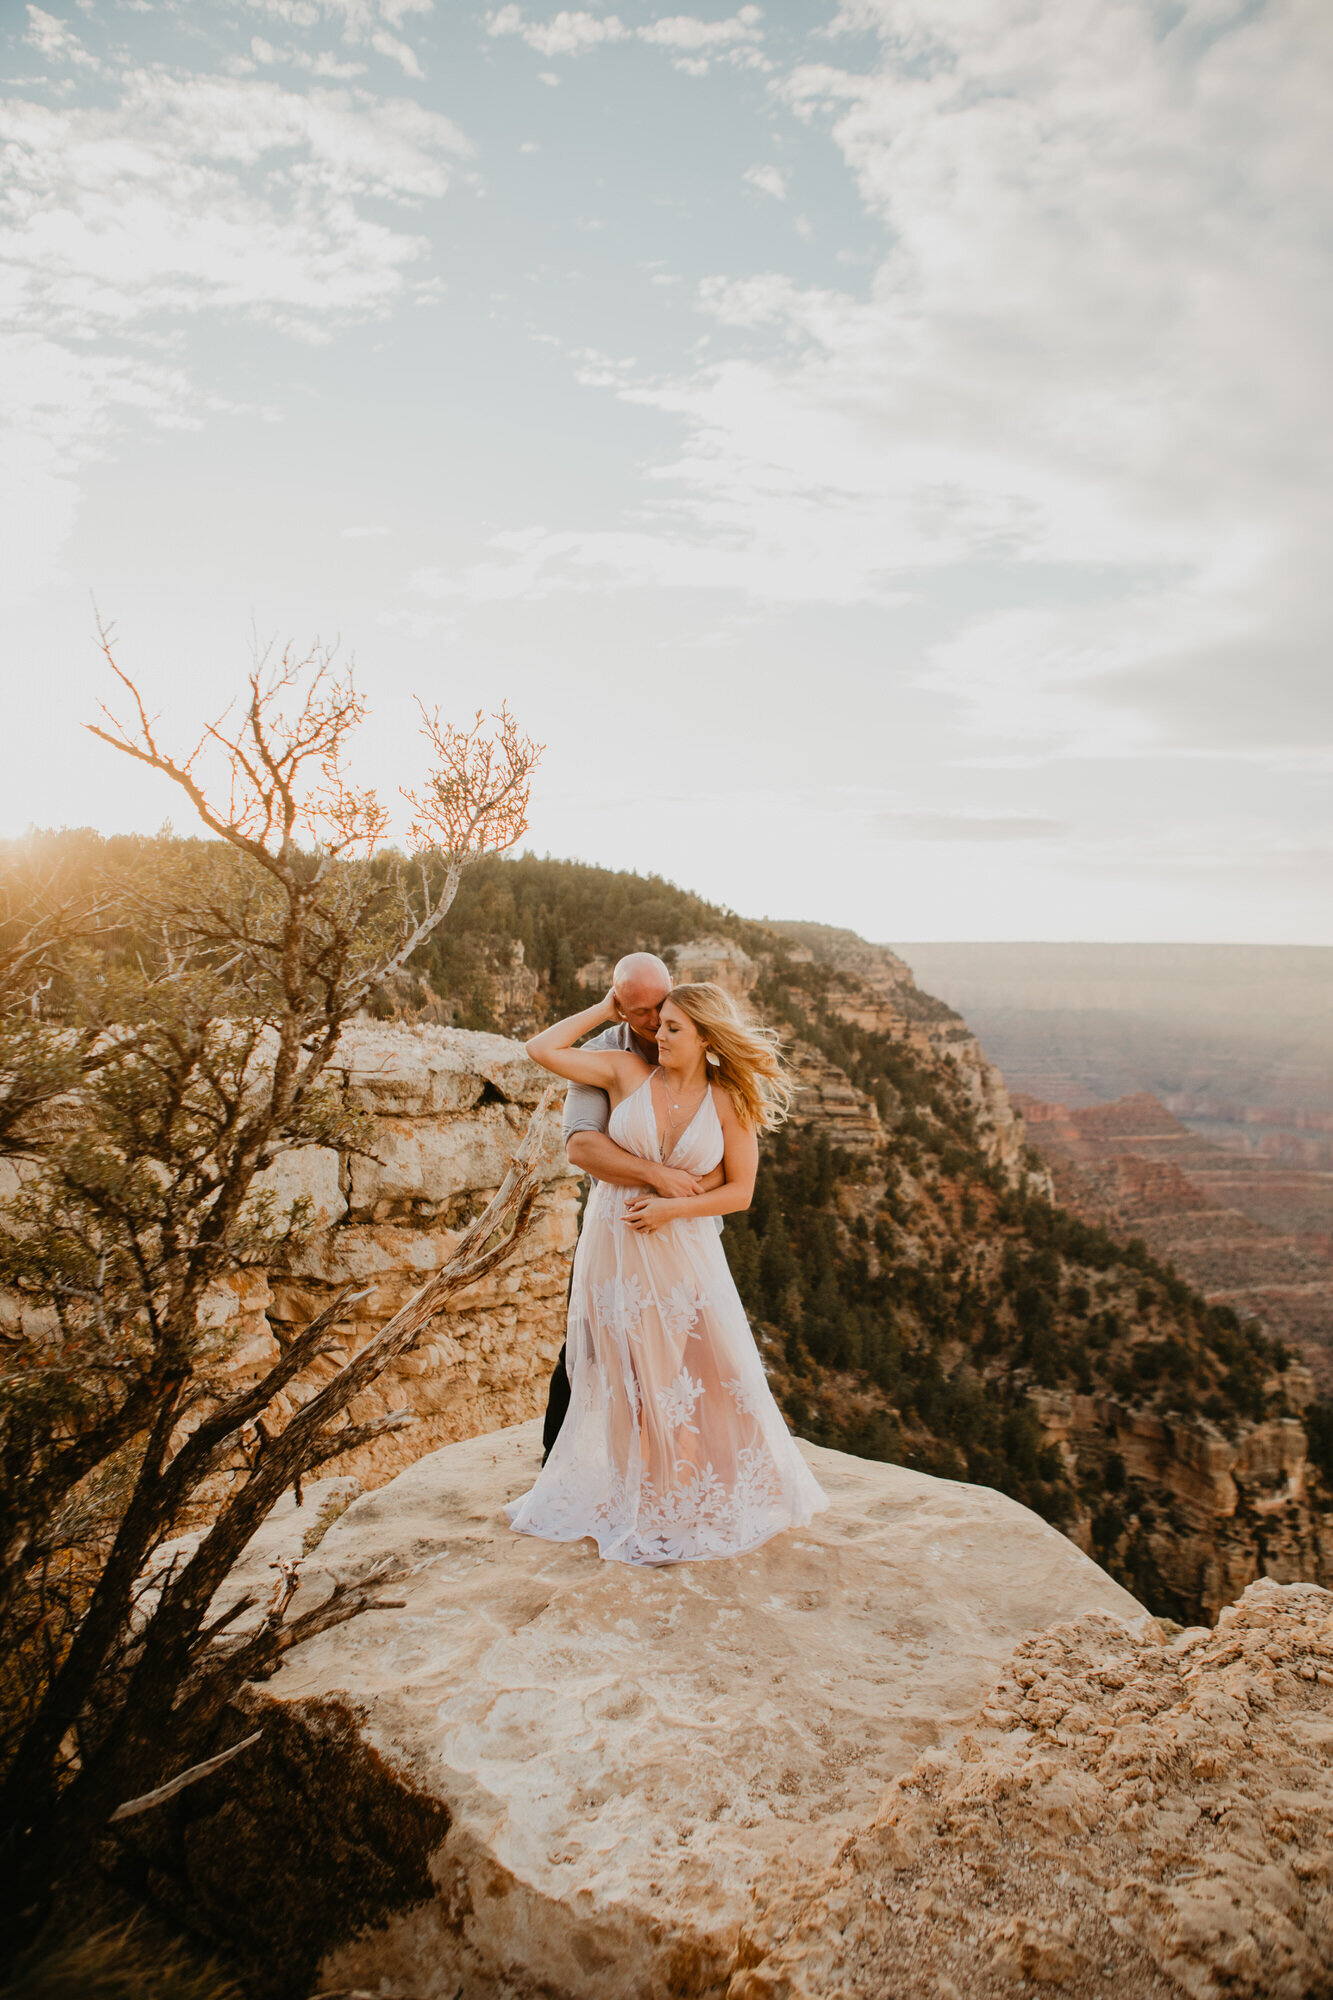 Sadie & Kyle - Engagement - Arizona Wedding Photographer - Amative Creative -50